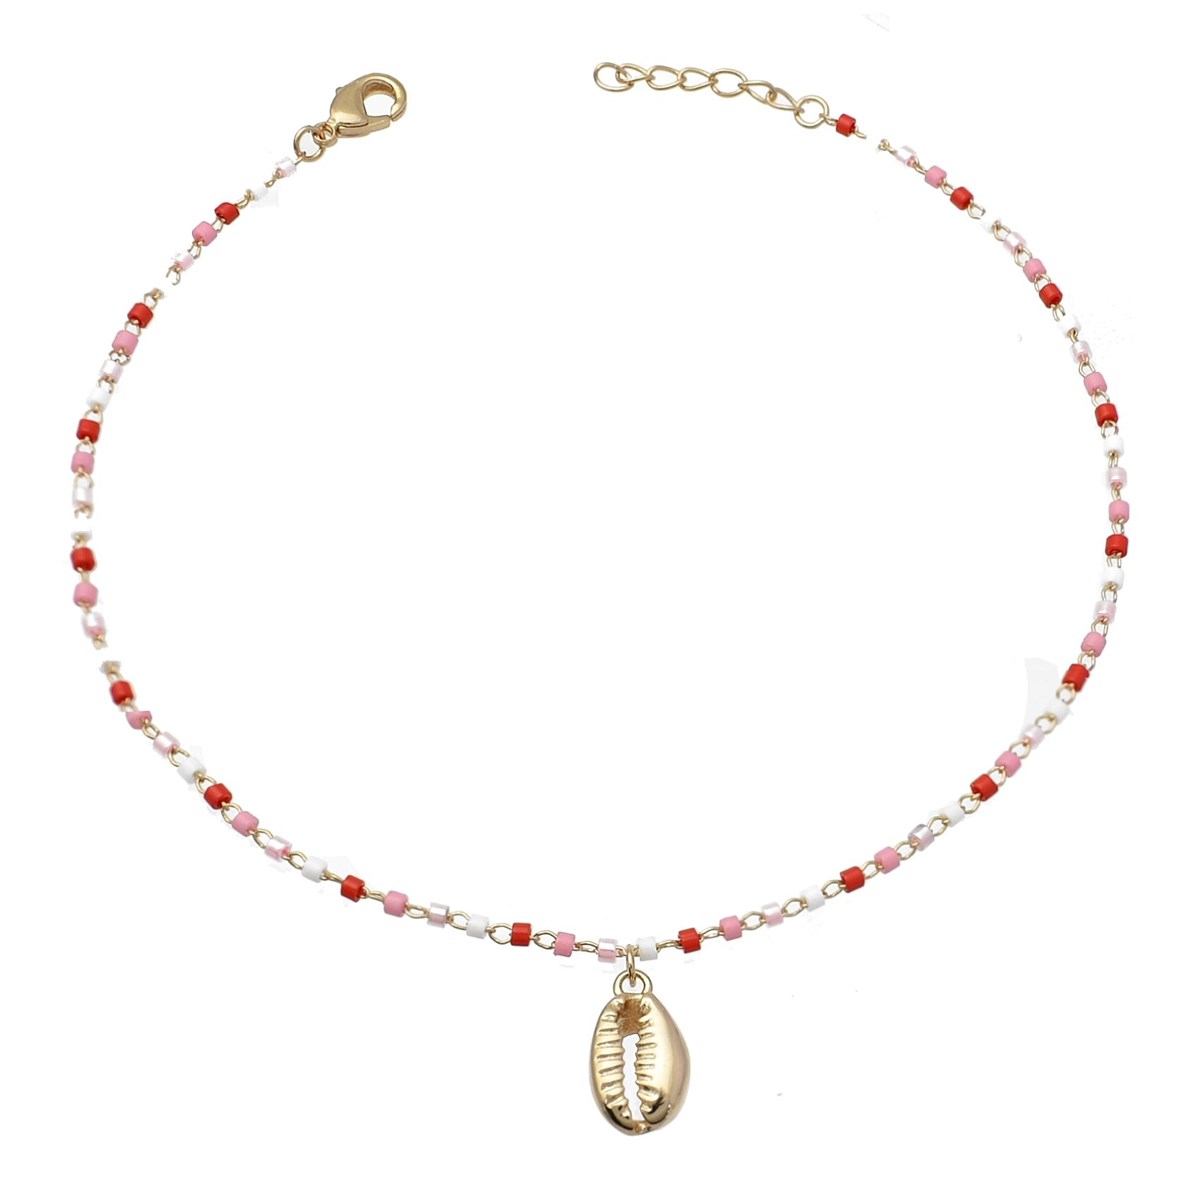 Chaîne de cheville coquillage cauri pendant perles Miyuki rouges roses et blanches Plaqué OR 750 3 microns